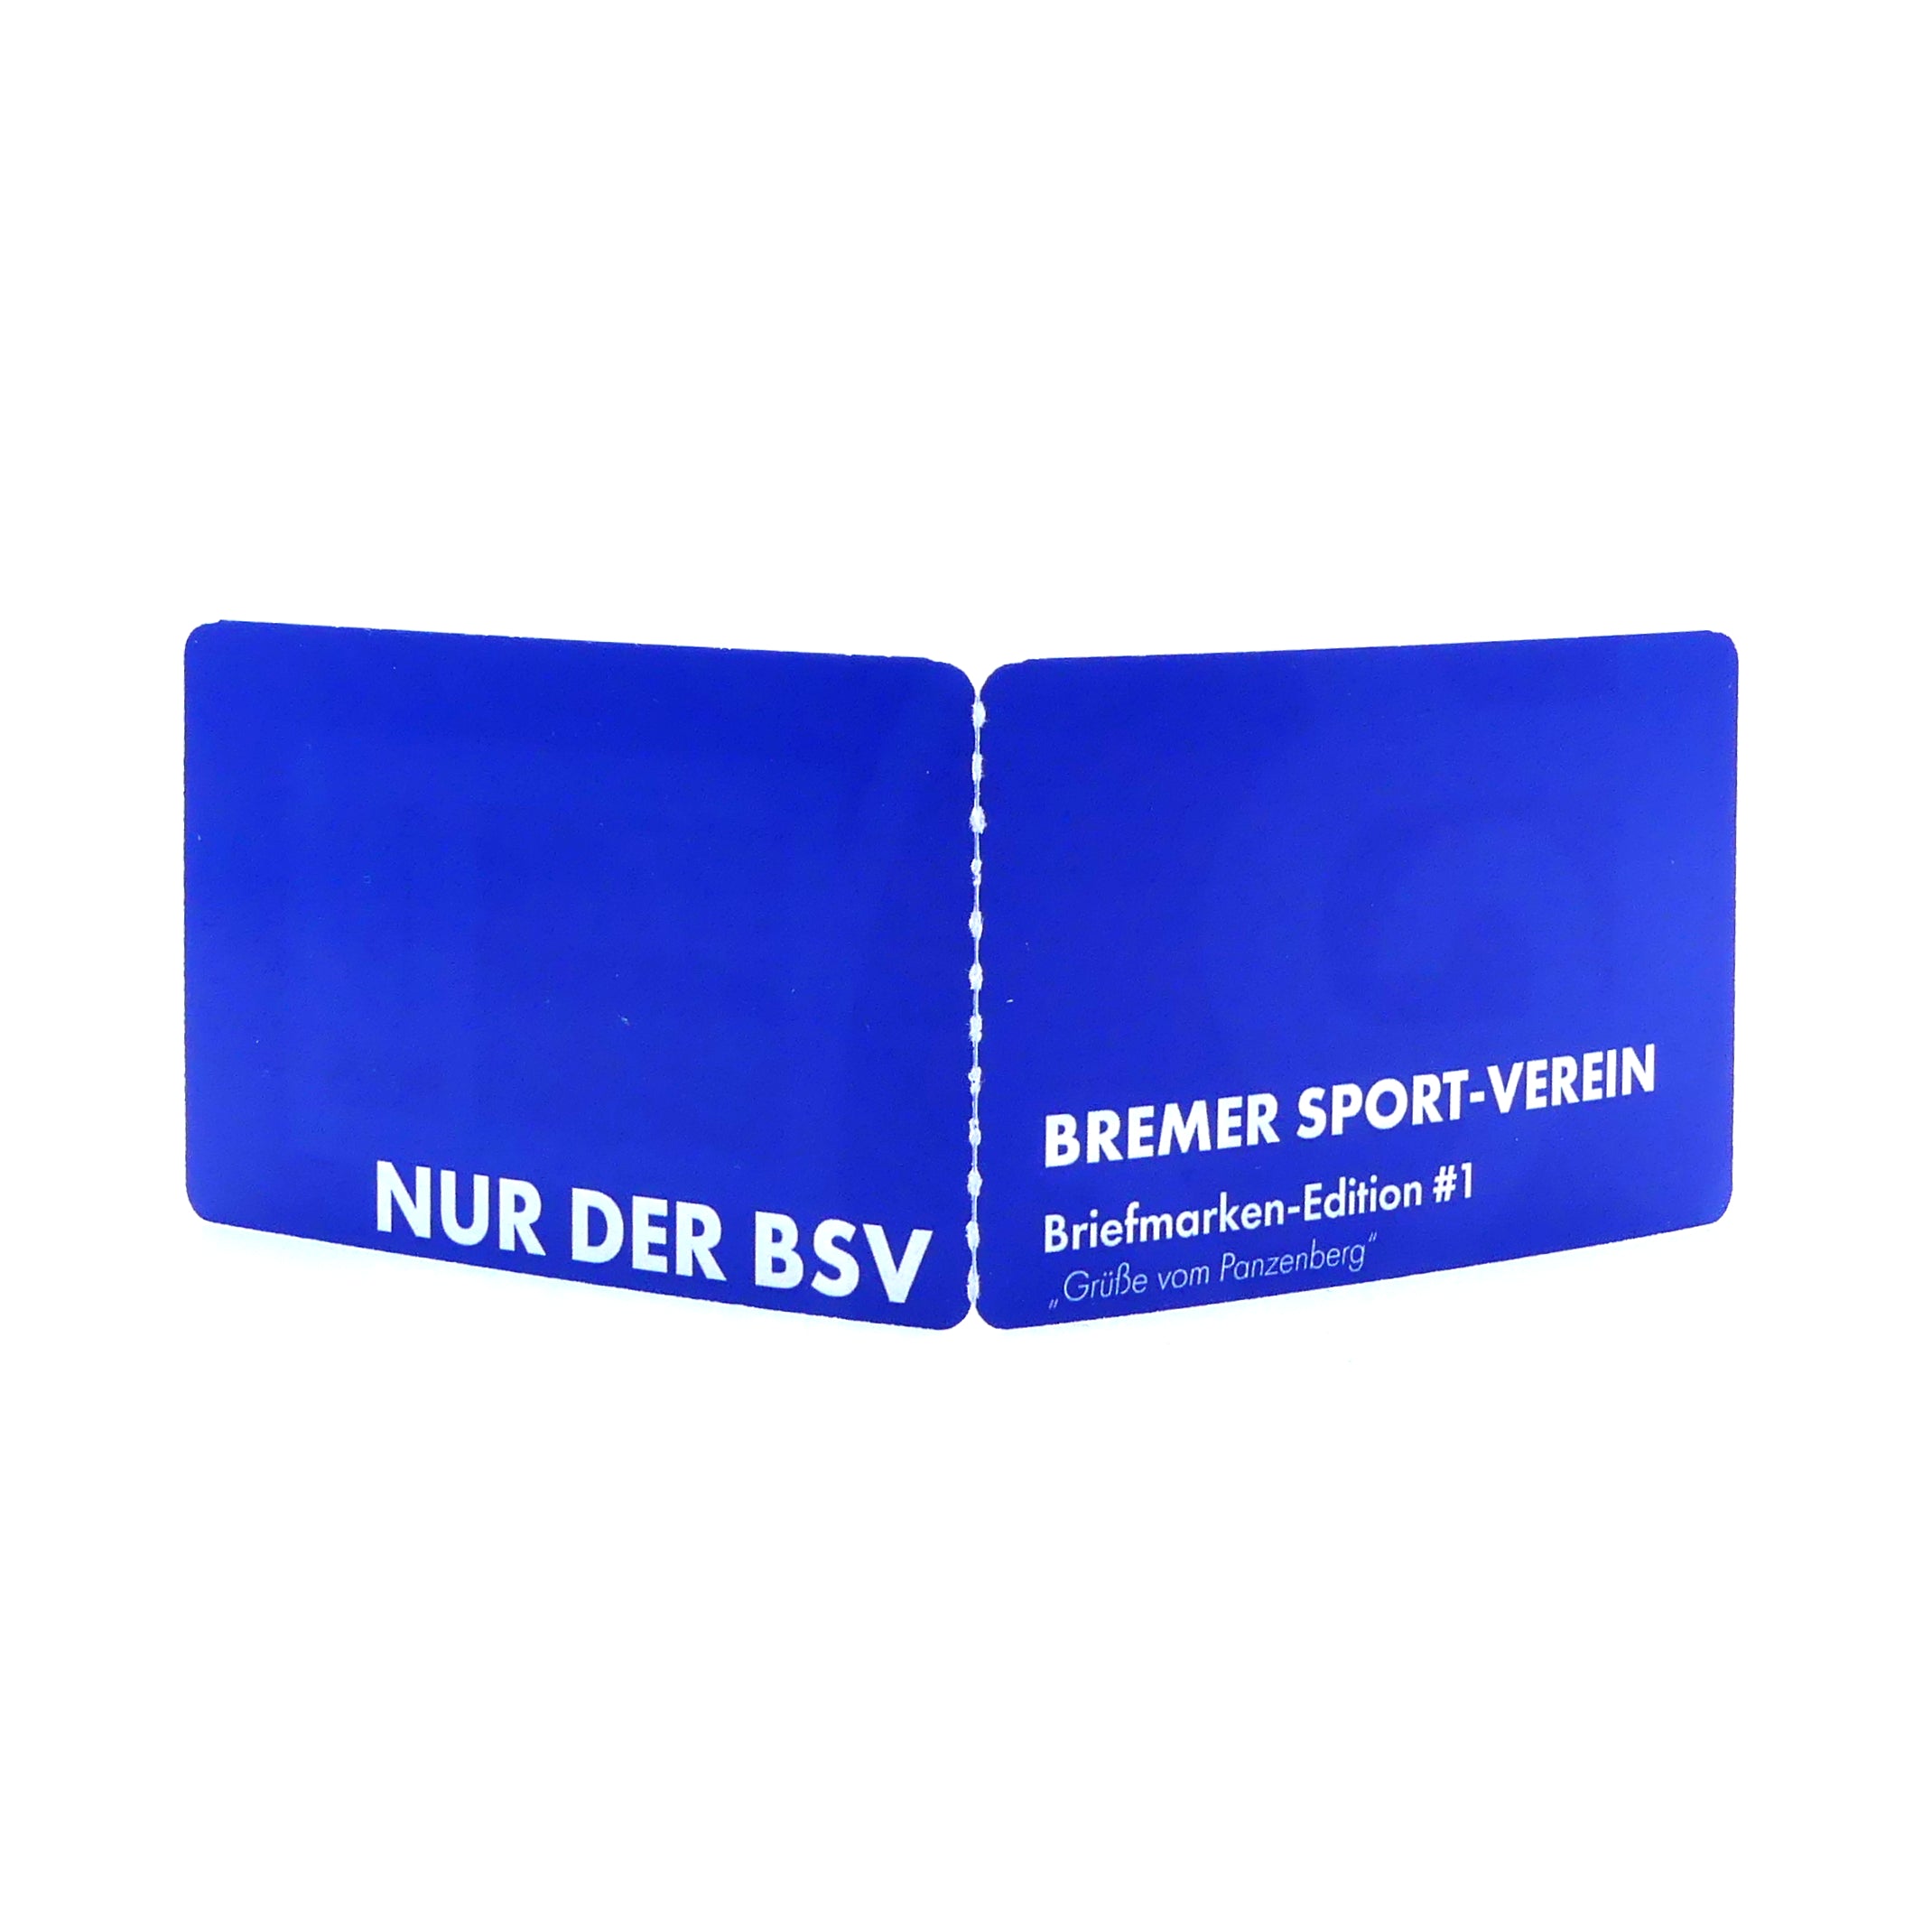 BSV Briefmarke Edition #1 "Grüße vom Panzenberg"